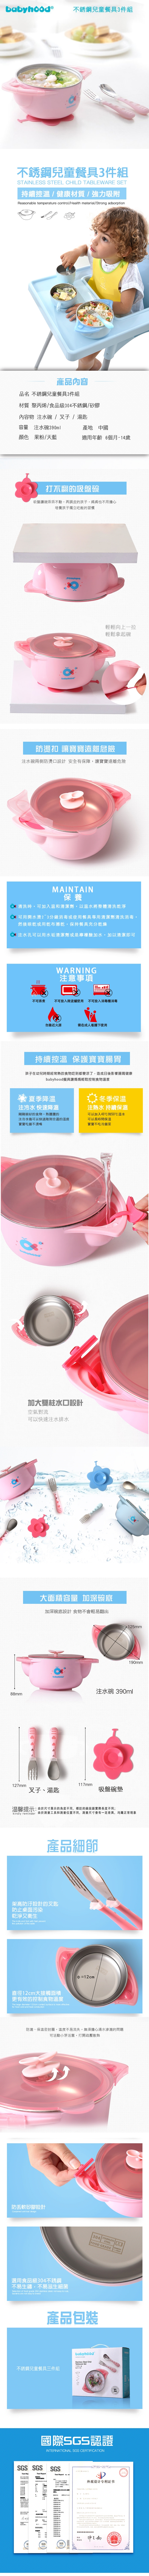 傳佳知寶-babyhood不銹鋼兒童餐具3件組、吸盤碗、保溫碗(果粉/天藍)